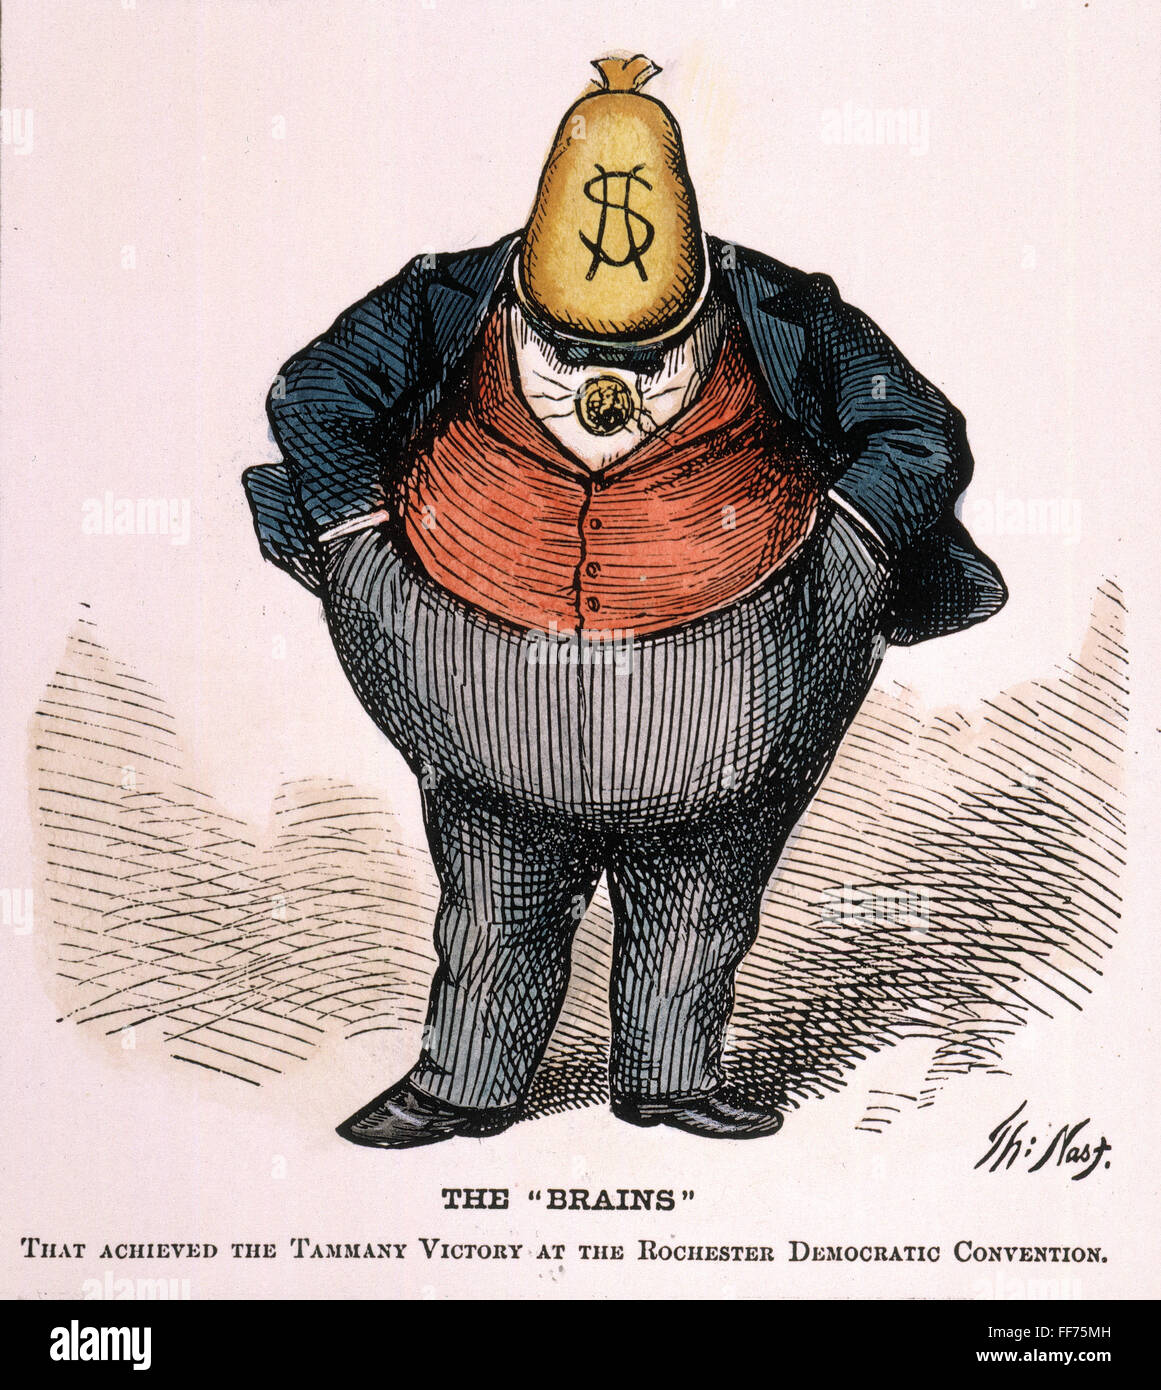 NAST: TWEED dell anello, 1871. /N'Tegli cervelli'. 1871 cartoon da Thomas Nast di William Magear 'Boss' Tweed, leader del gruppo di corrotti New York City partito democratico politici conosciuta come 'Tweed anello.' Foto Stock